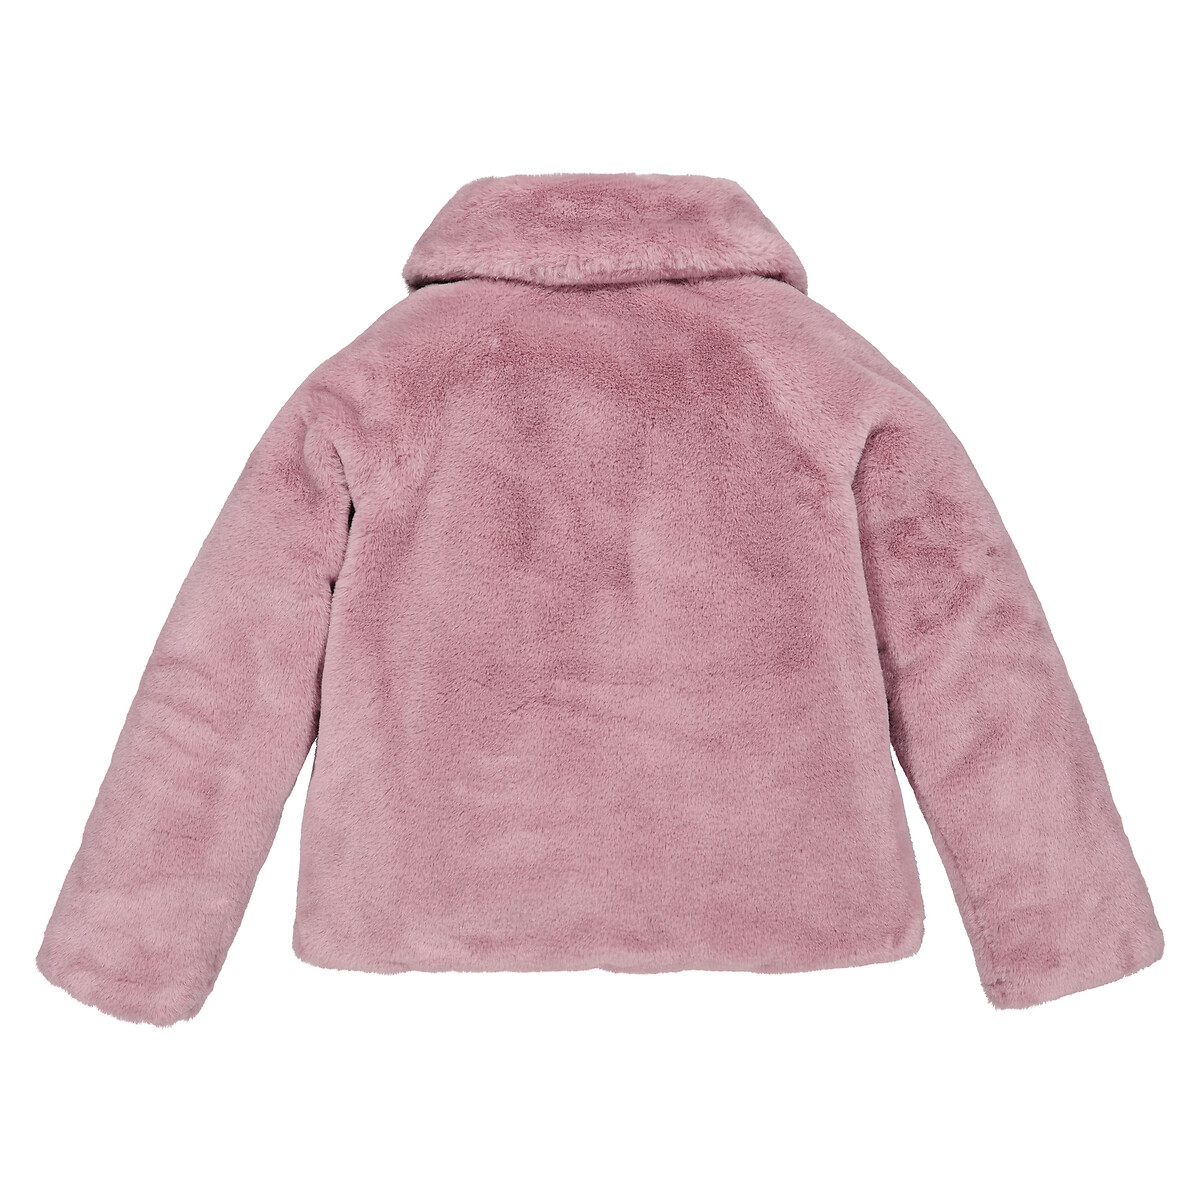 Пальто Утепленное из искусственного меха 3 года - 94 см розовый LaRedoute, размер 3 года - 94 см - фото 4